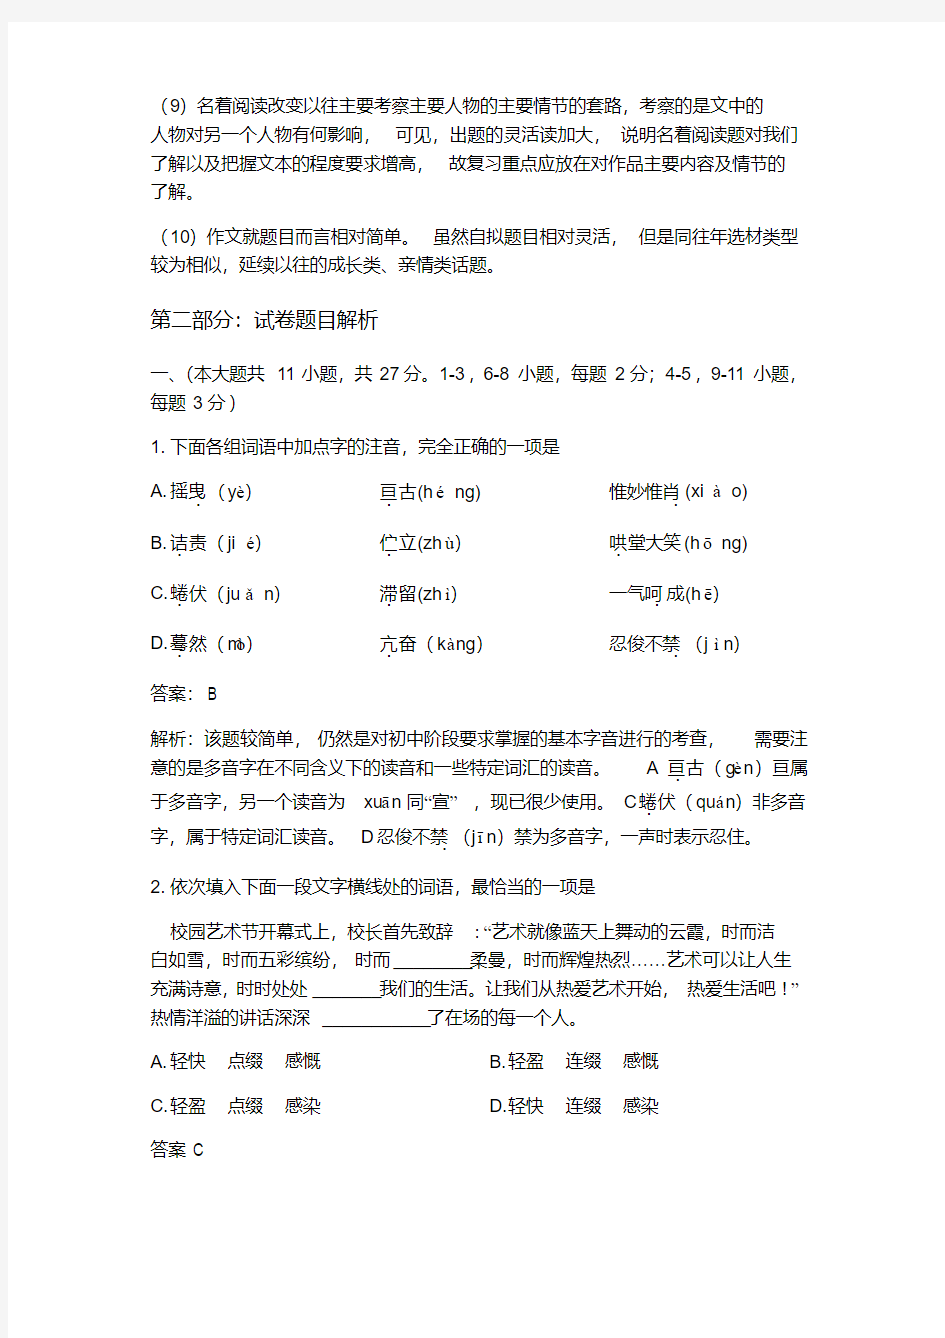 2019年天津中考语文试卷解析(20200520190502)